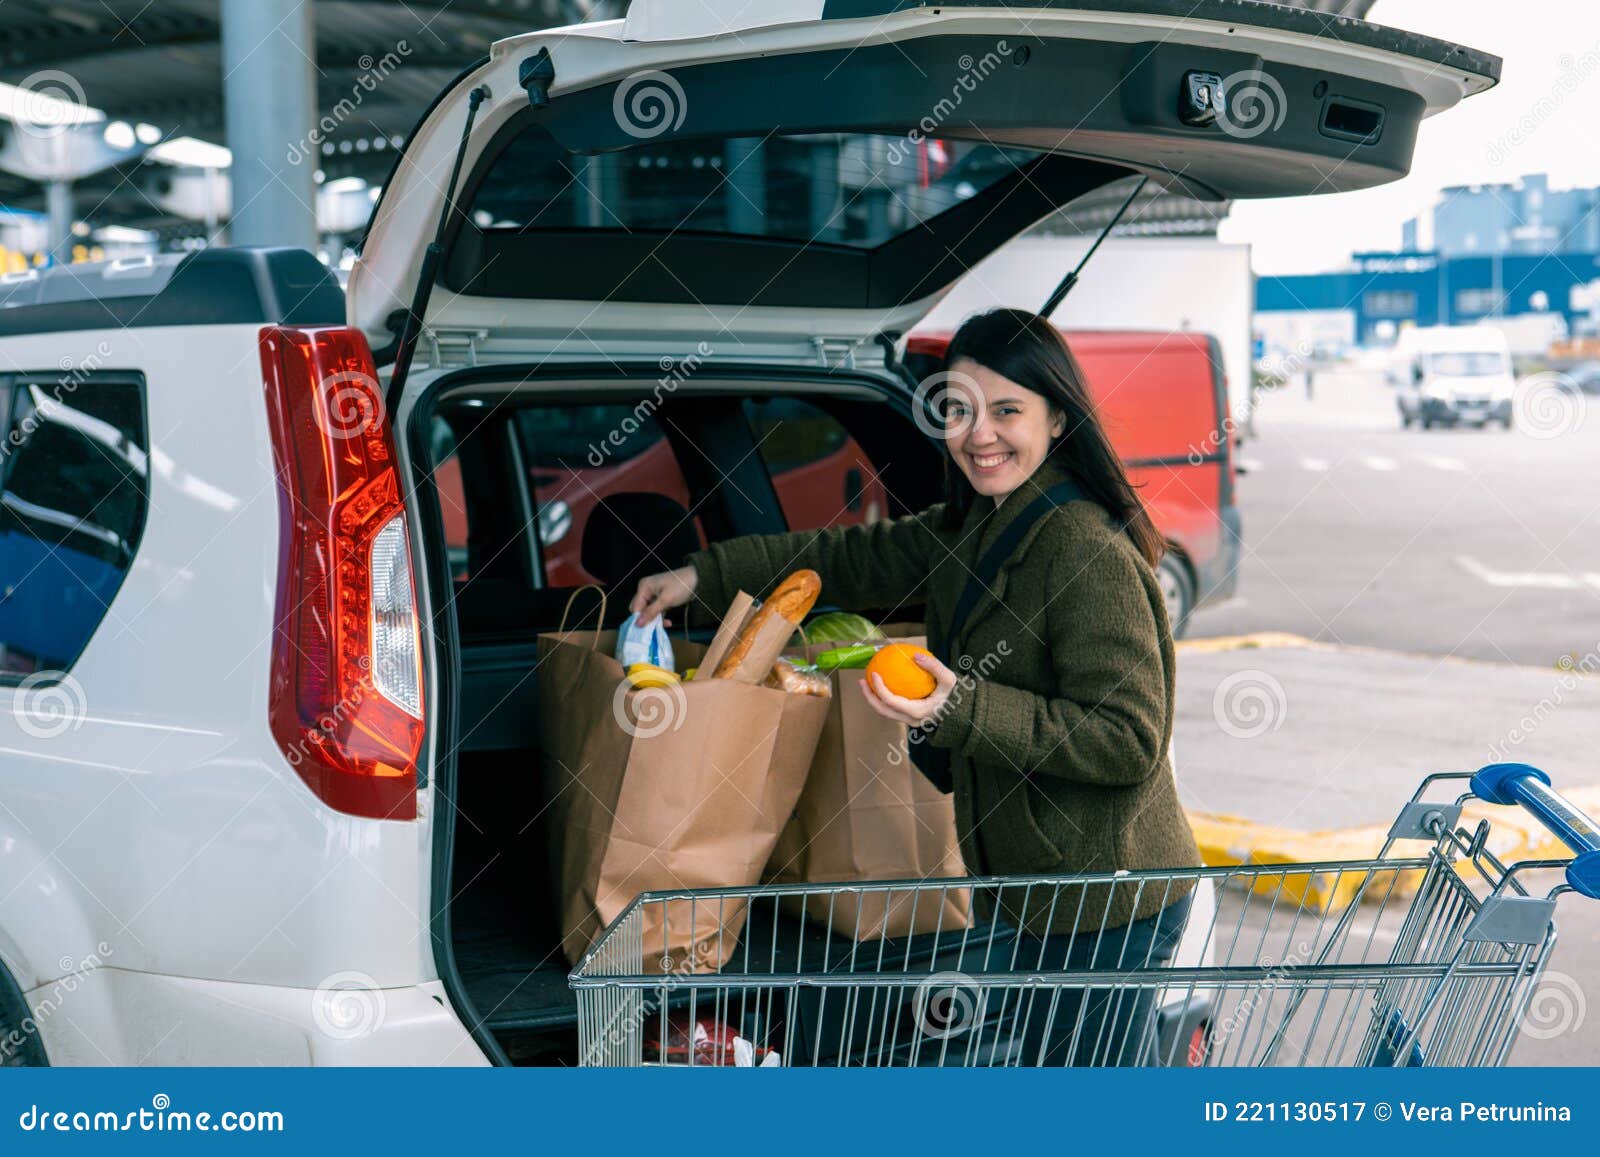 Frau Legte Taschen Mit Produkten in Auto Kofferraum Nach